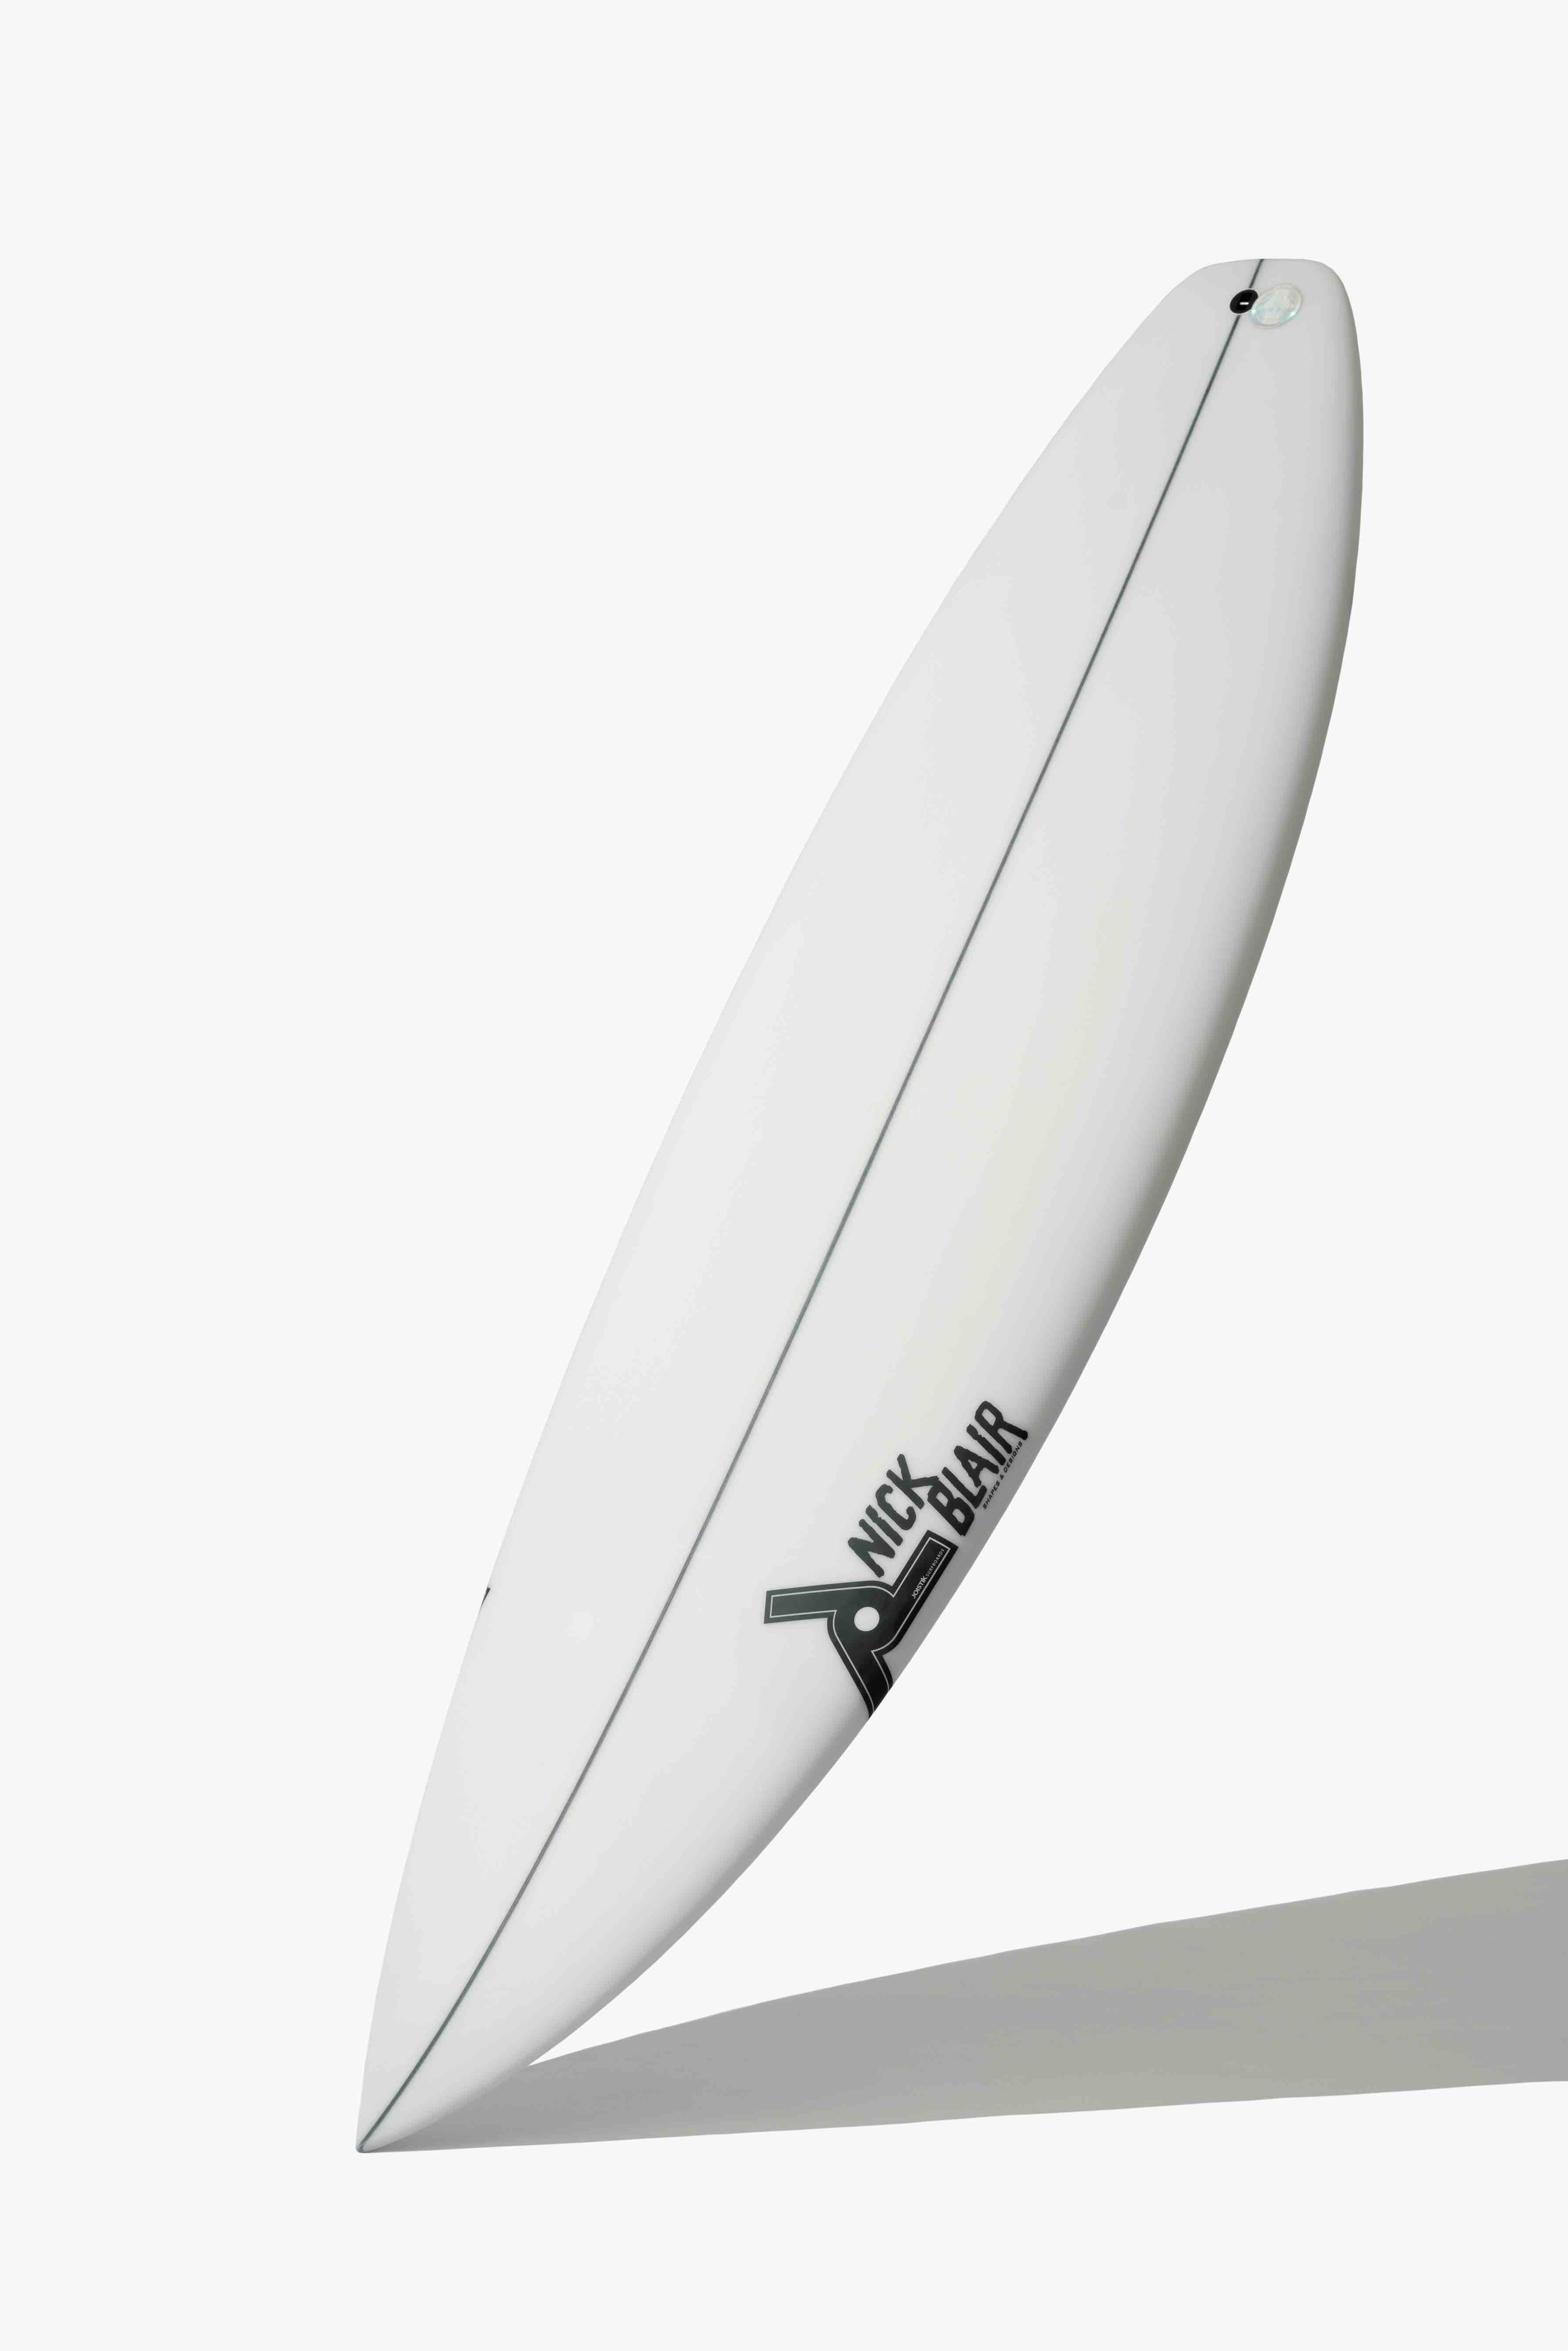 どのサーフボードがいい 自粛明けのサーフィンを想像しながら見たい最旬サーフボードvol 2 Surfin Life サーフィンライフ